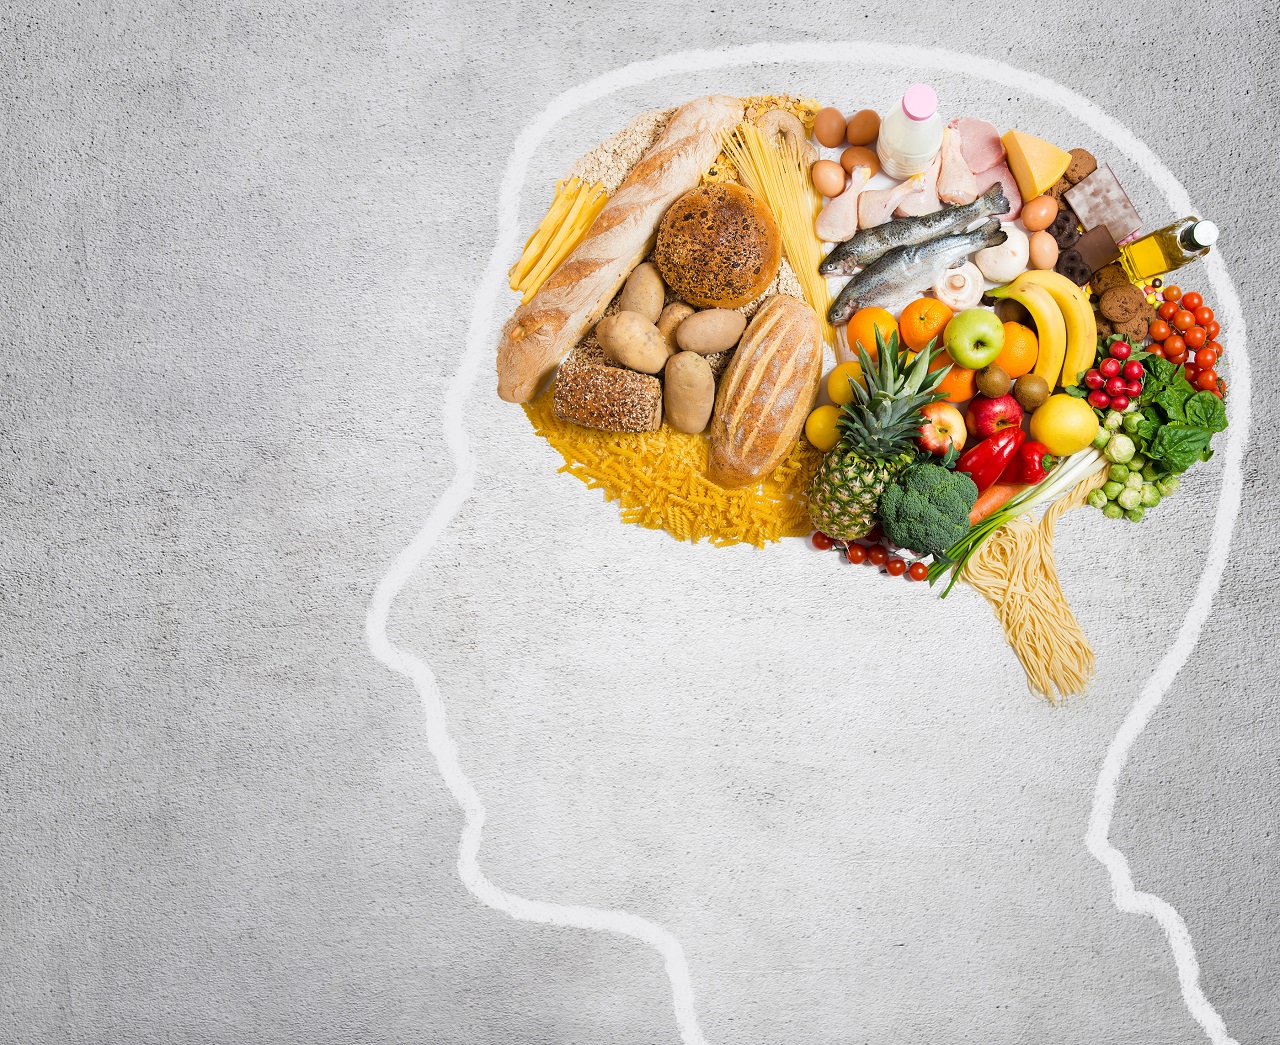 Vì sao cải xoăn, súp lơ, cải bó xôi được đề xuất trong chế độ ăn giúp bổ máu não?
